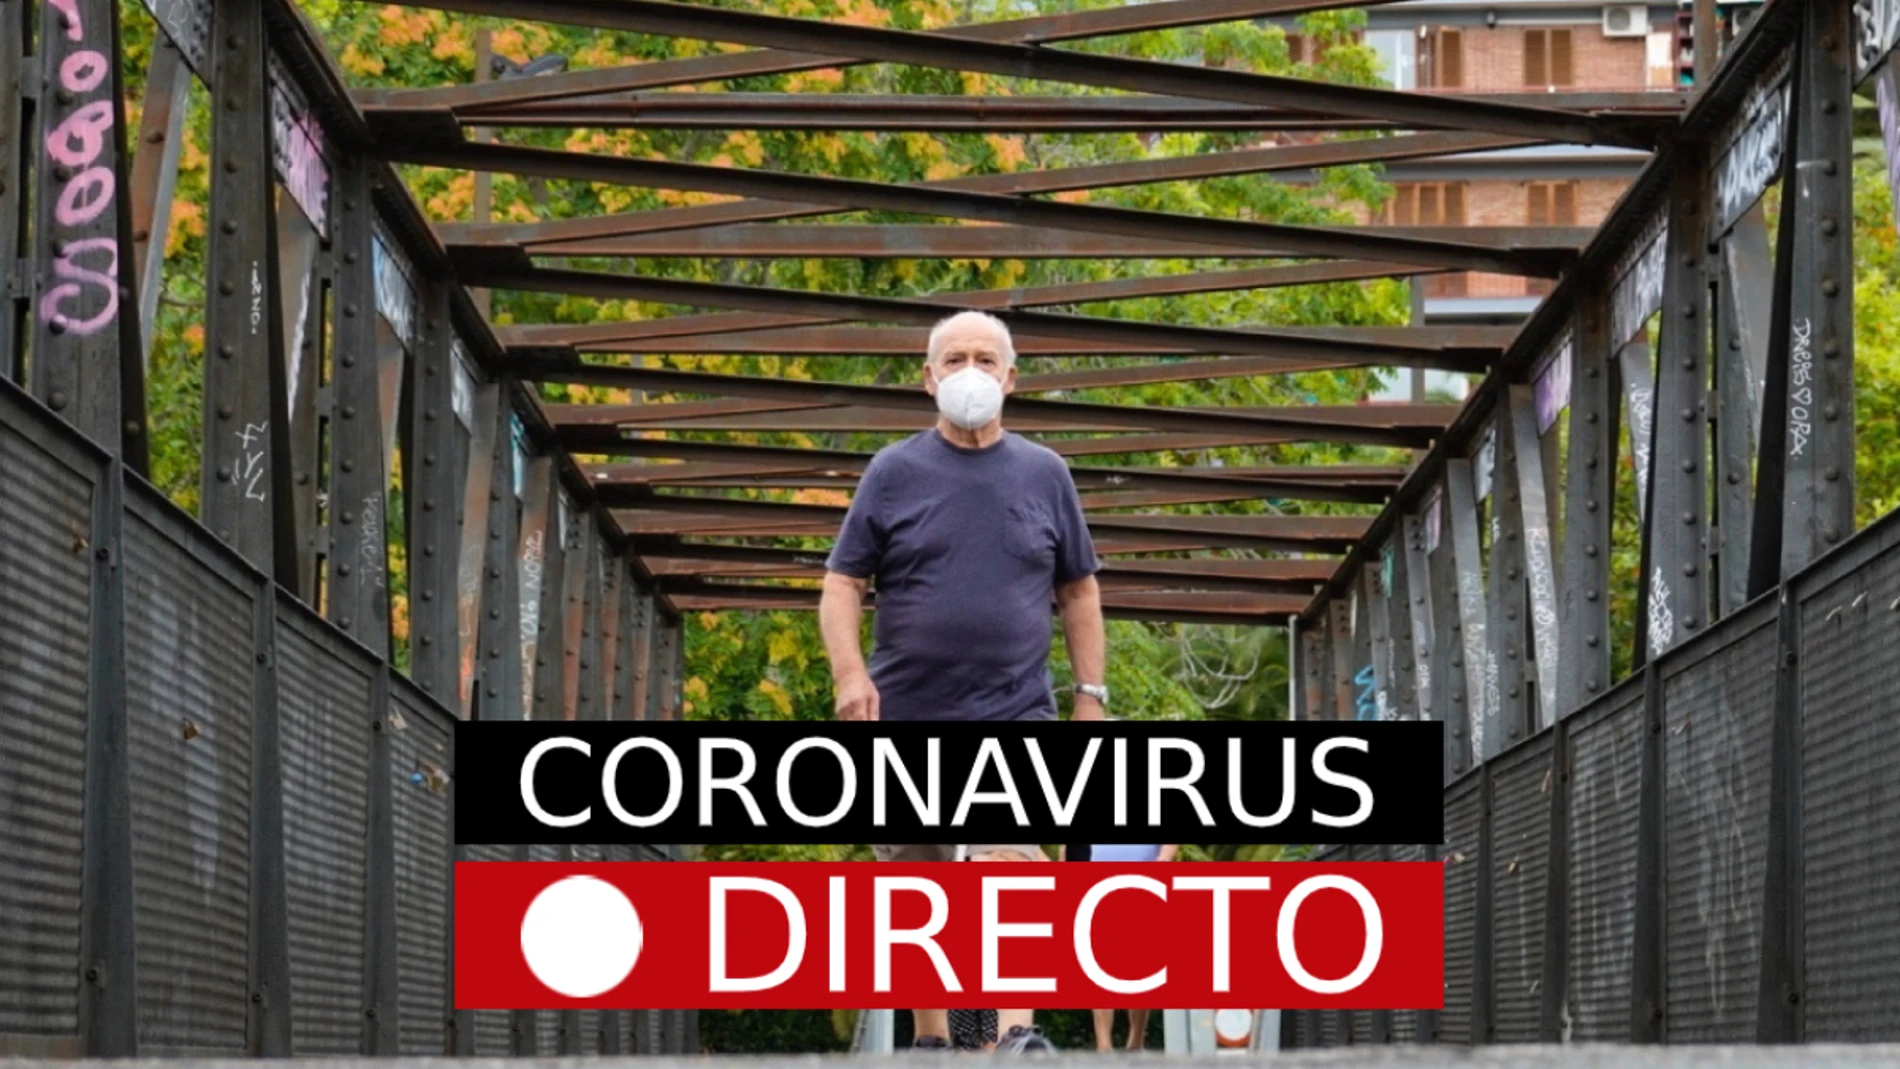 Última hora del coronavirus, en directo en laSexta.com